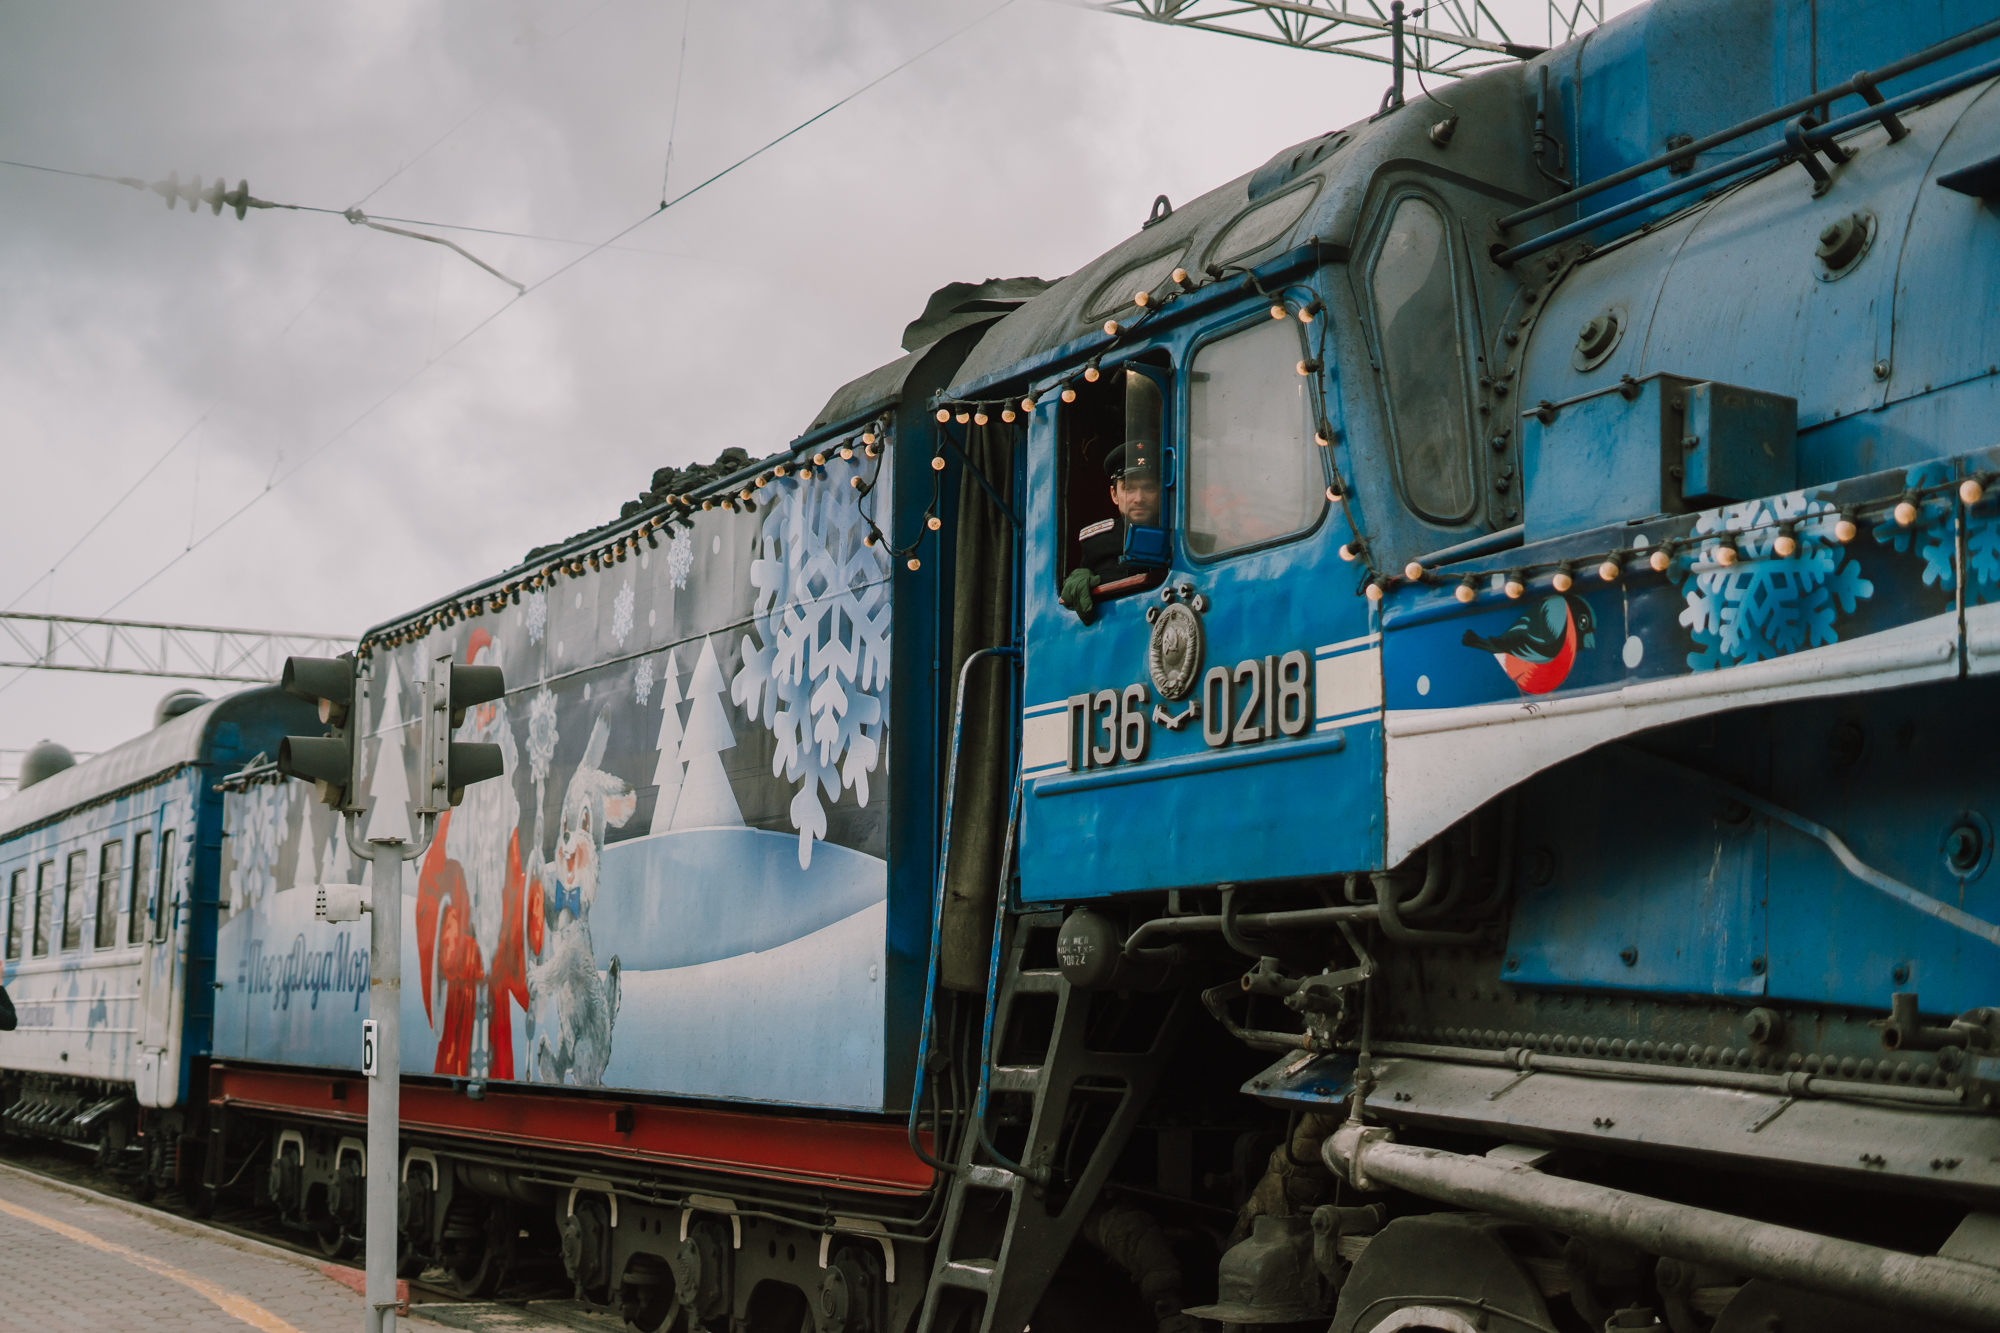 DSC00024 Новый год к нам мчится: кадры прибытия поезда Деда Мороза